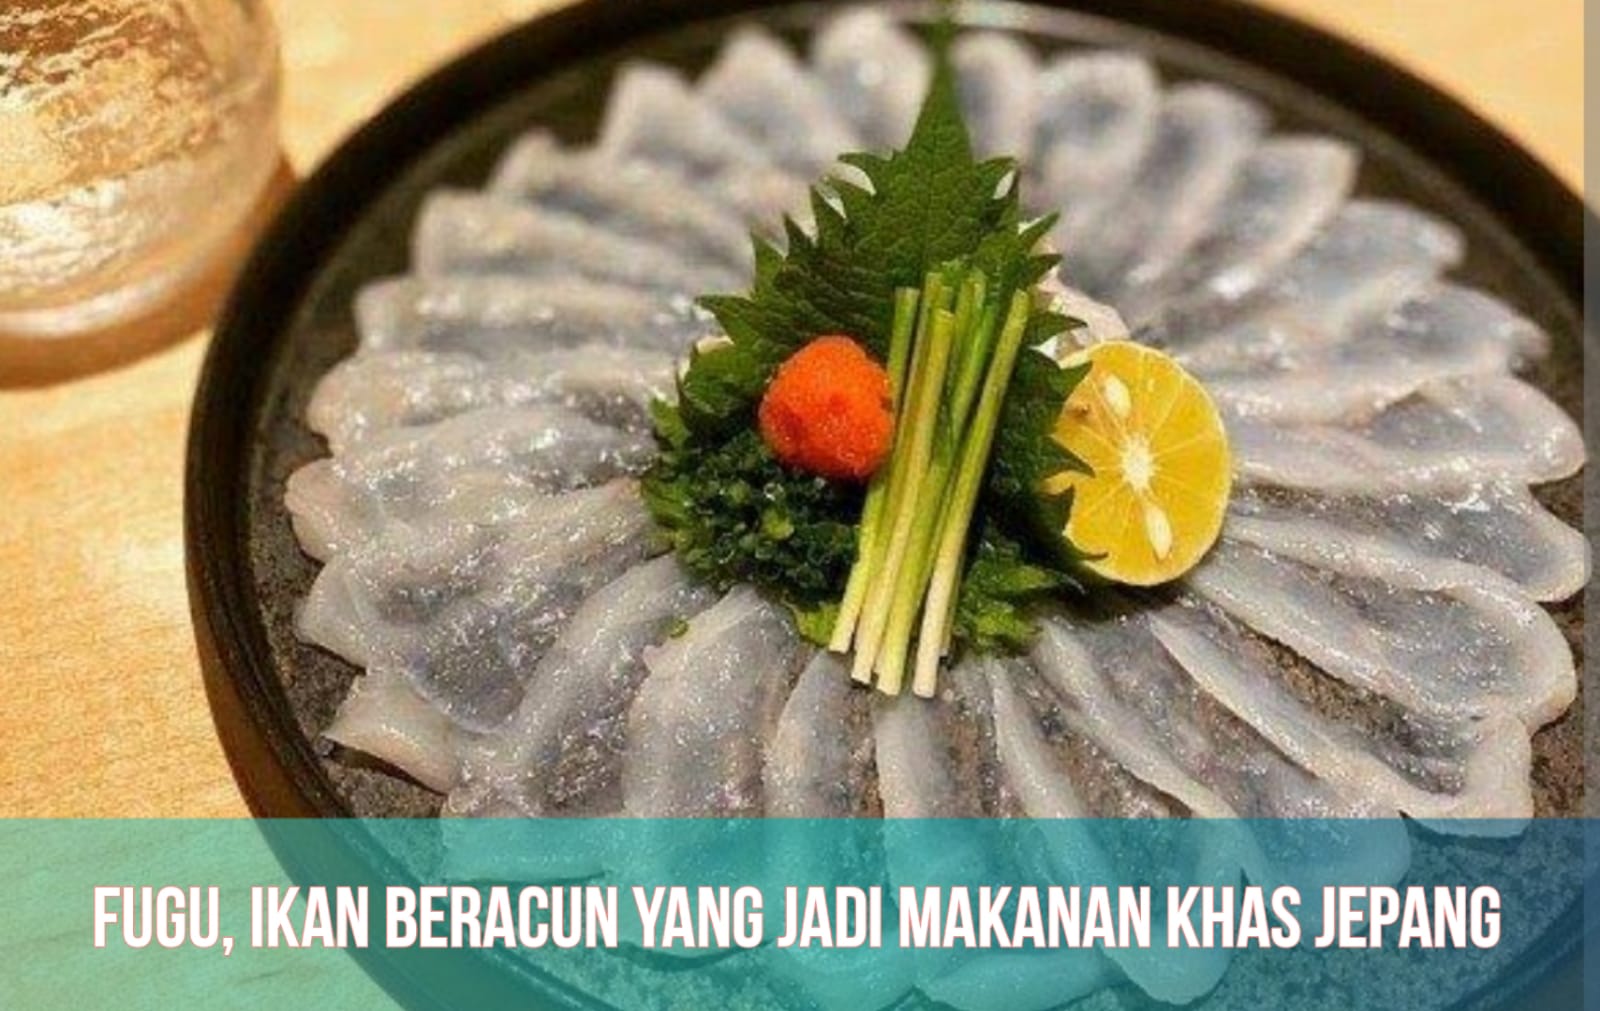 Inilah 4 Fakta Fugu, Ikan Beracun yang Jadi Makanan Khas Jepang